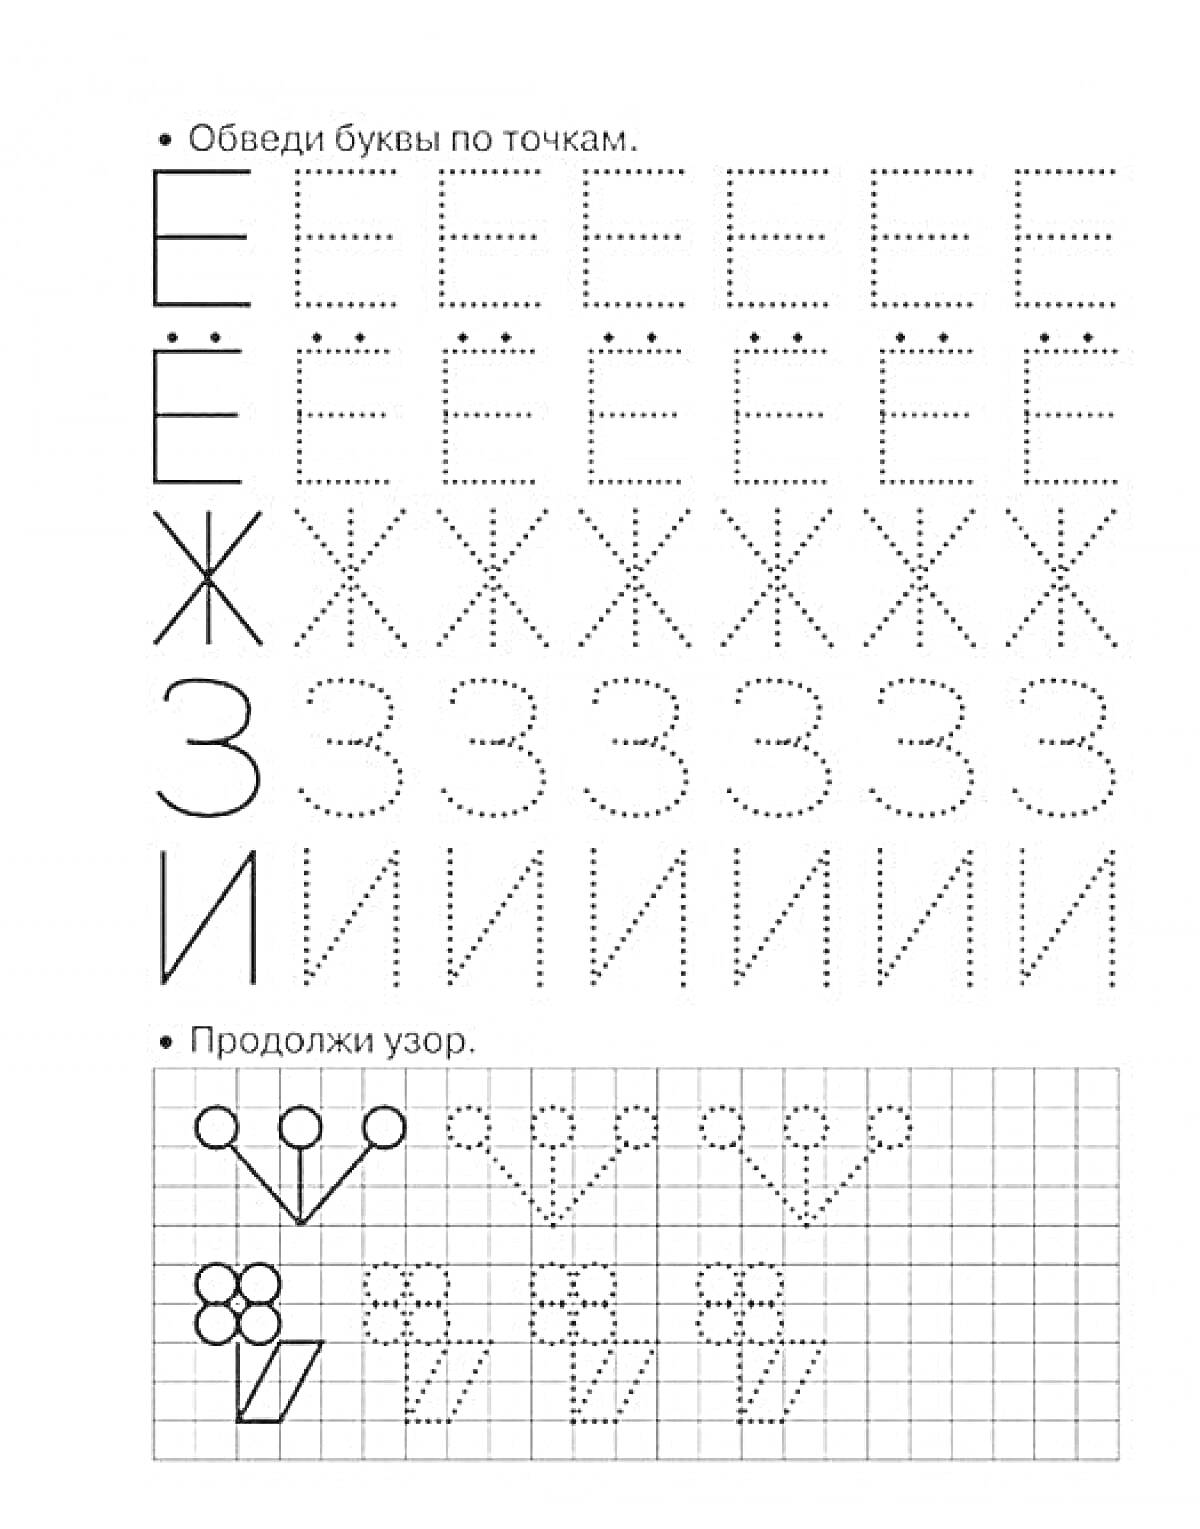 Пропись для обучения печатным буквам Е, Ё, Ж, З, И и задания на продолжение узора